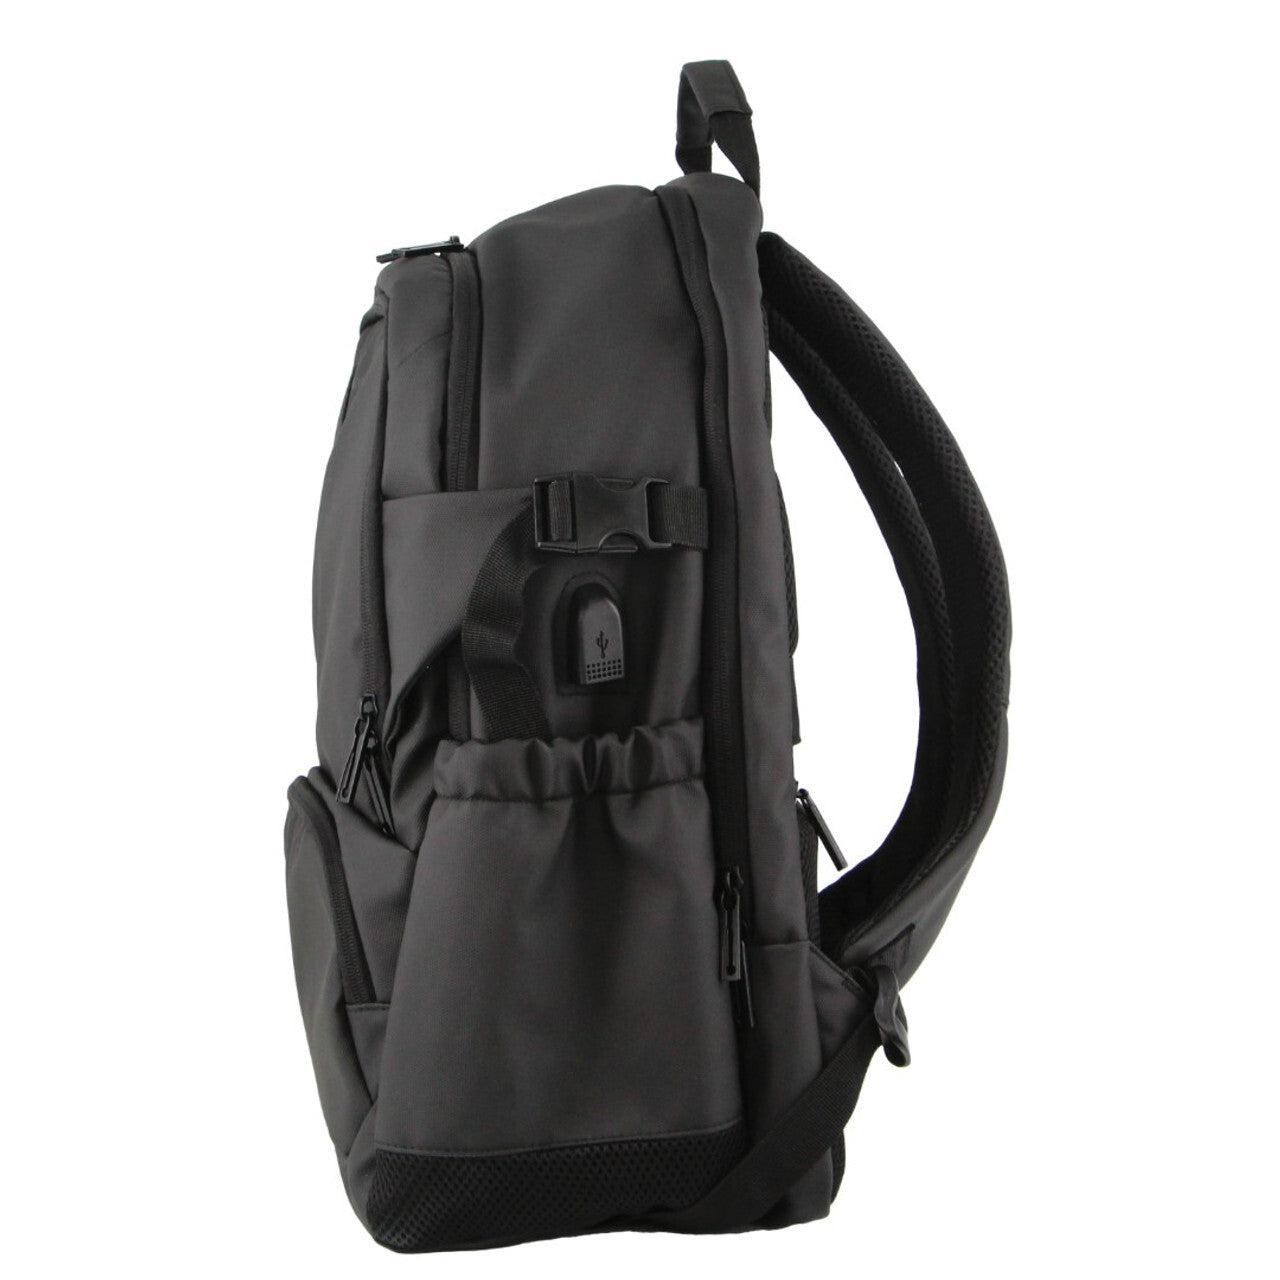 Backpack Bag Travel & Business Built-in USB Port Outdoor - Black